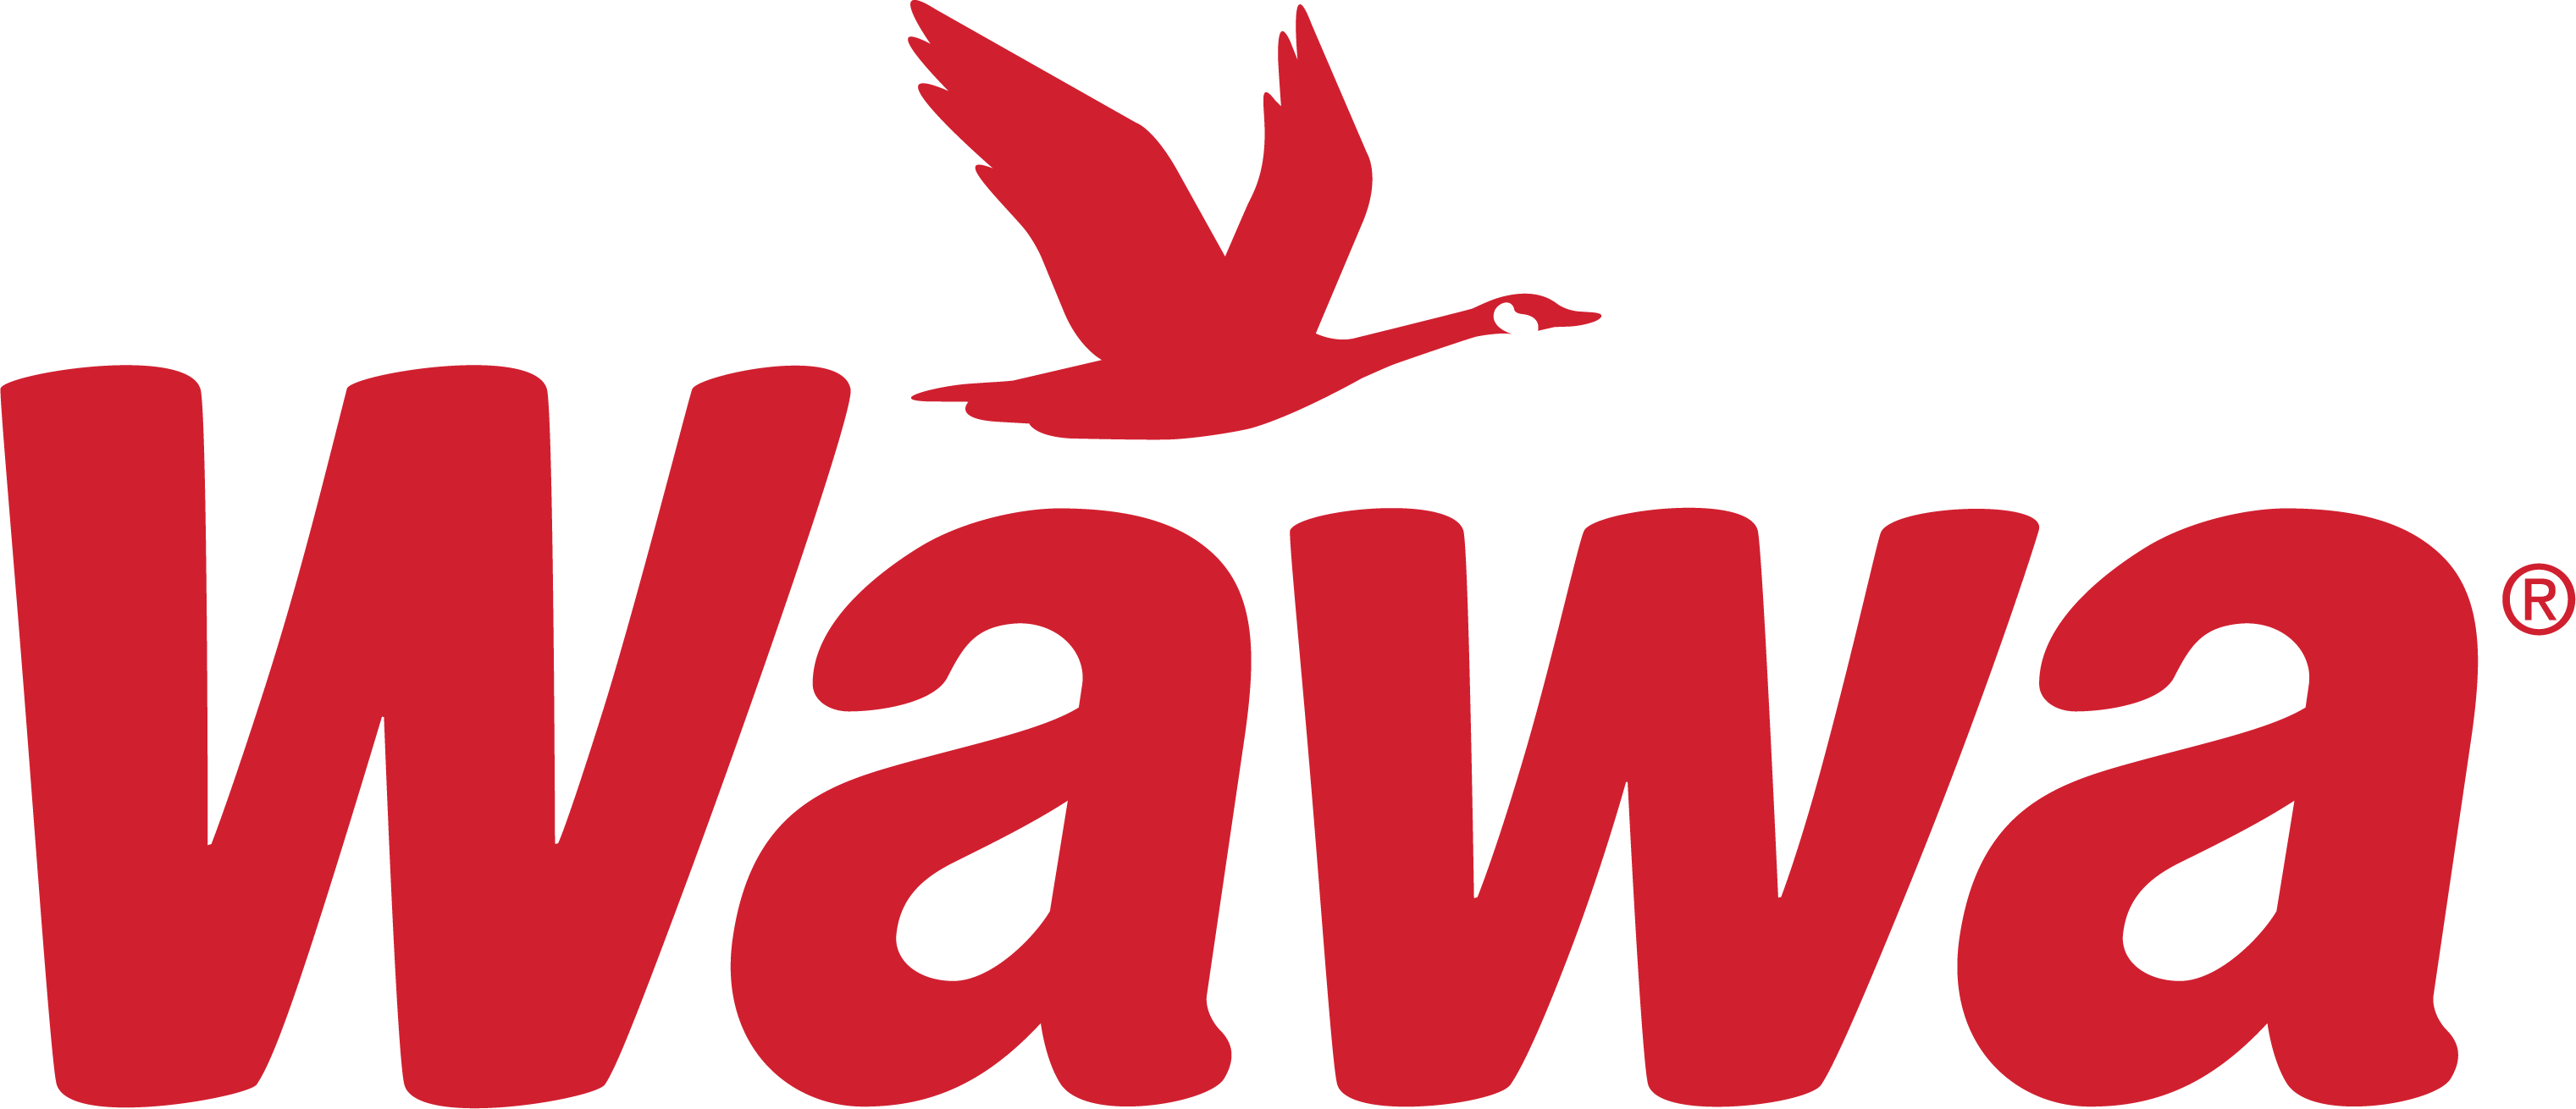 Wawa Foundation logo